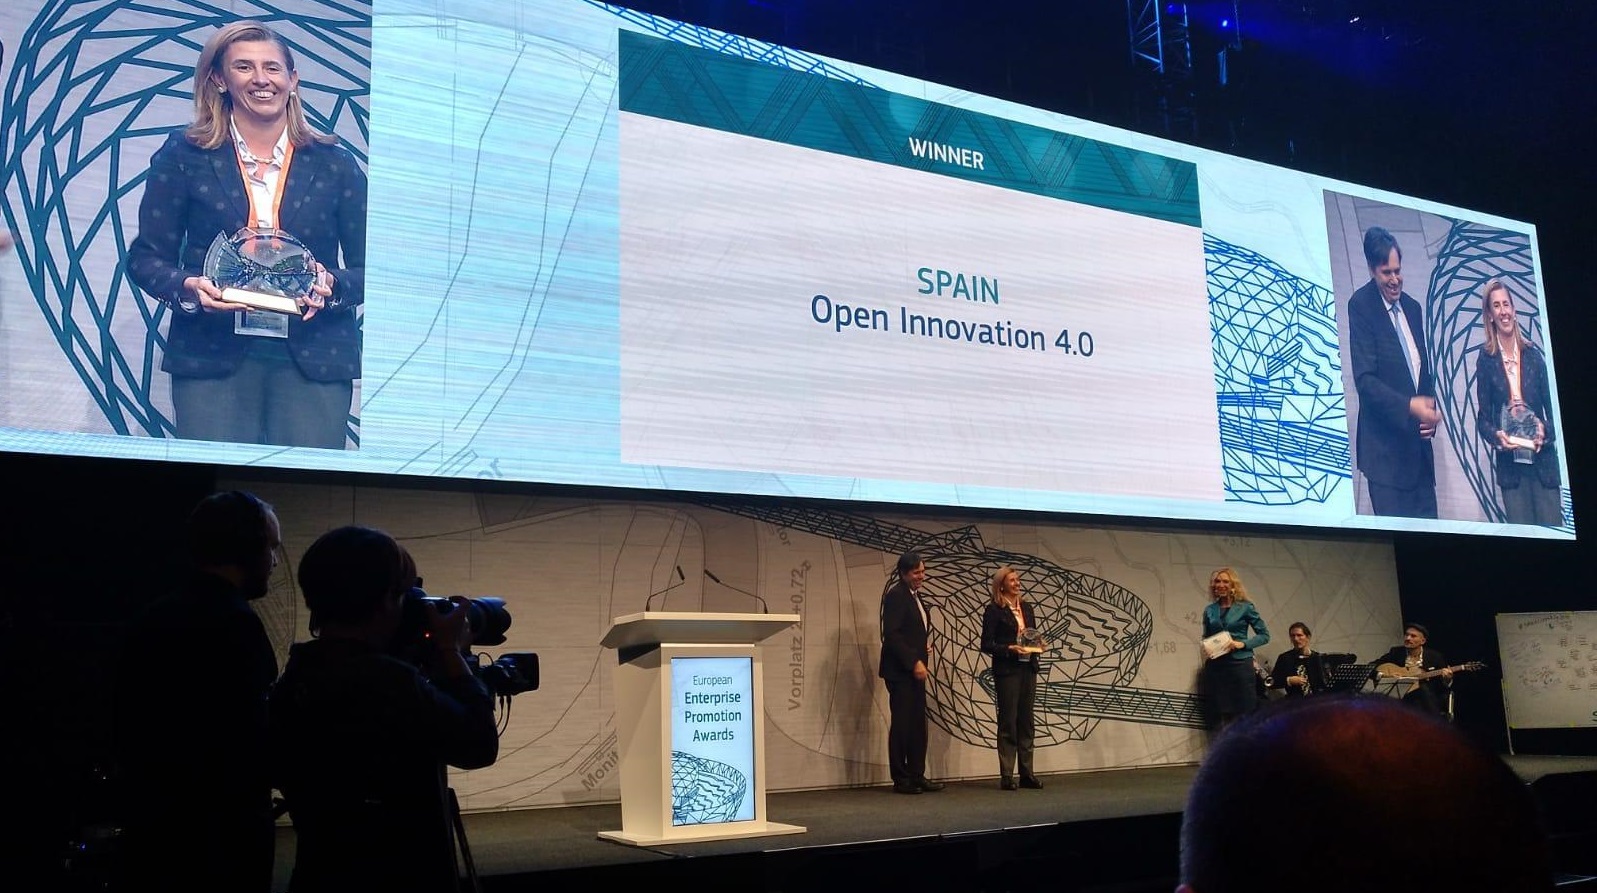 Imagen noticia:  La Comisión Europea concede a Asturias el Premio Europeo a la Promoción Empresarial por el programa Open Innovation 4.0, impulsado por el CEEI y el  IDEPA